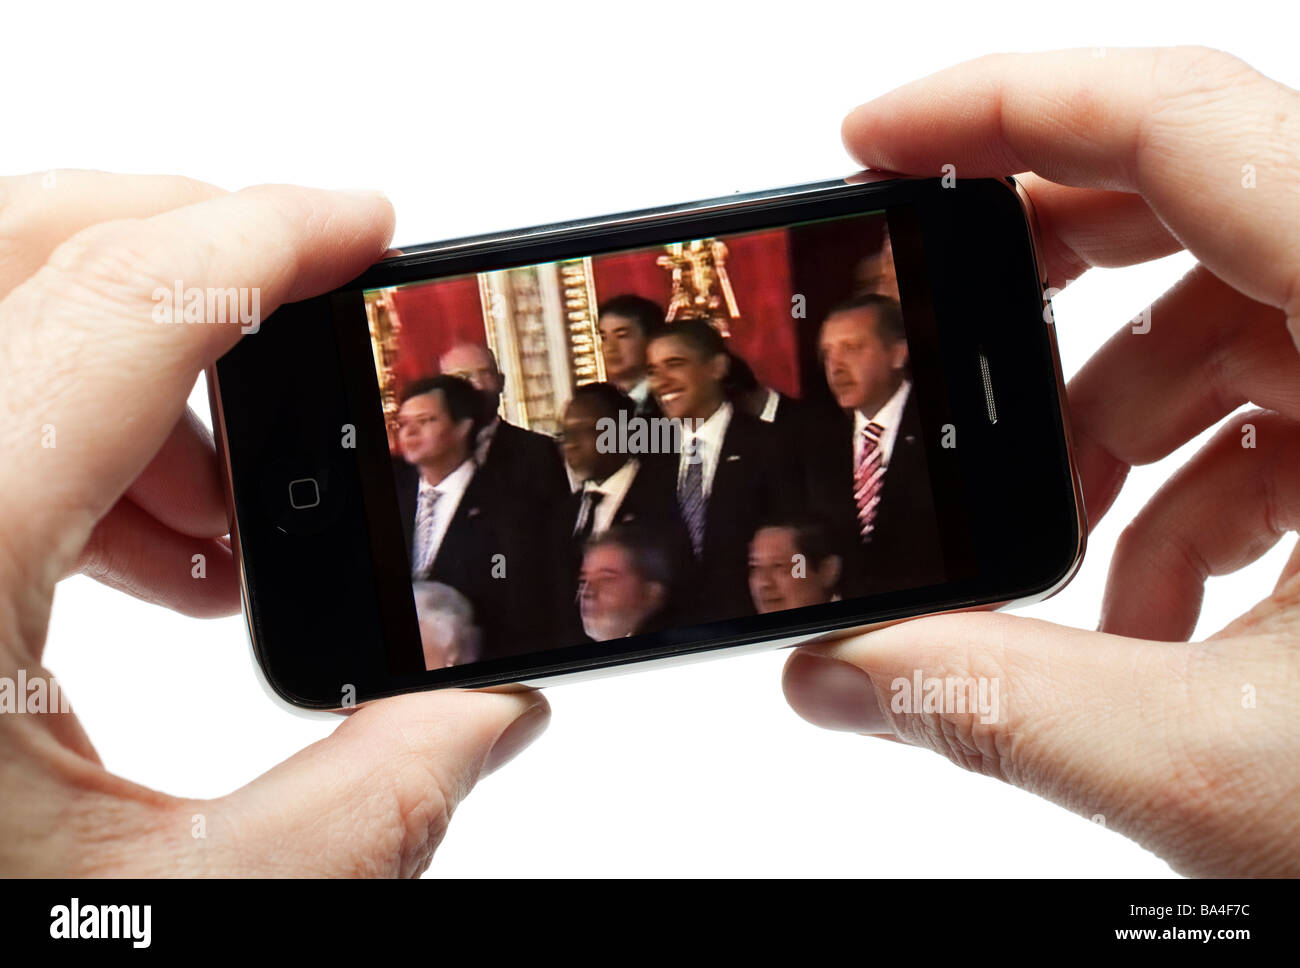 Männliche Hände halten iPhone gerade einen video clip Stockfoto